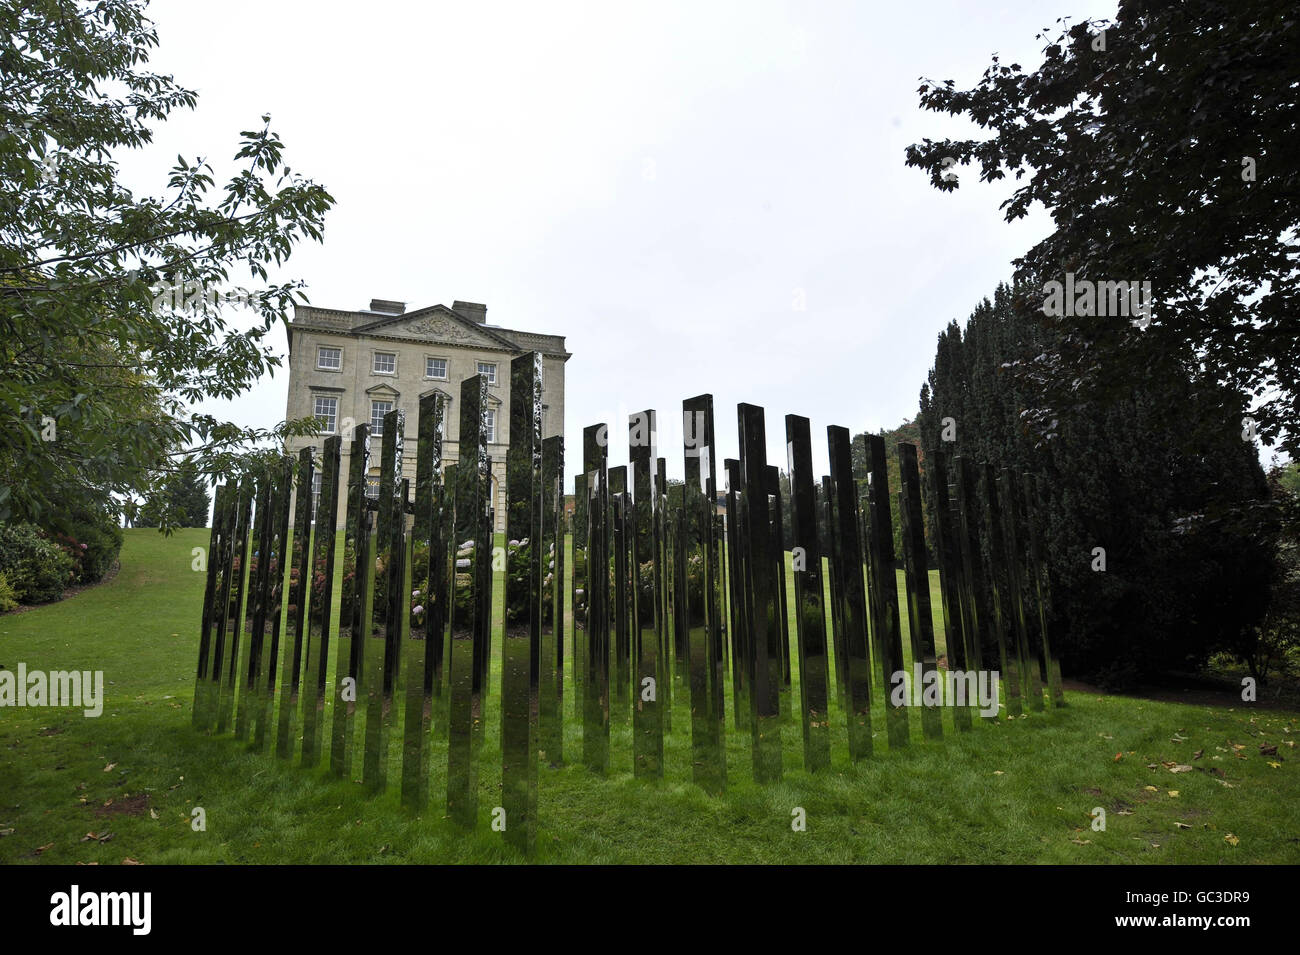 Une vue générale de l'artiste né au Danemark, Jeppe hein, la nouvelle sculpture publique majeure intitulée « Follow Me », située à la Maison et jardins du fort Royal, à l'Université de Bristol. Banque D'Images